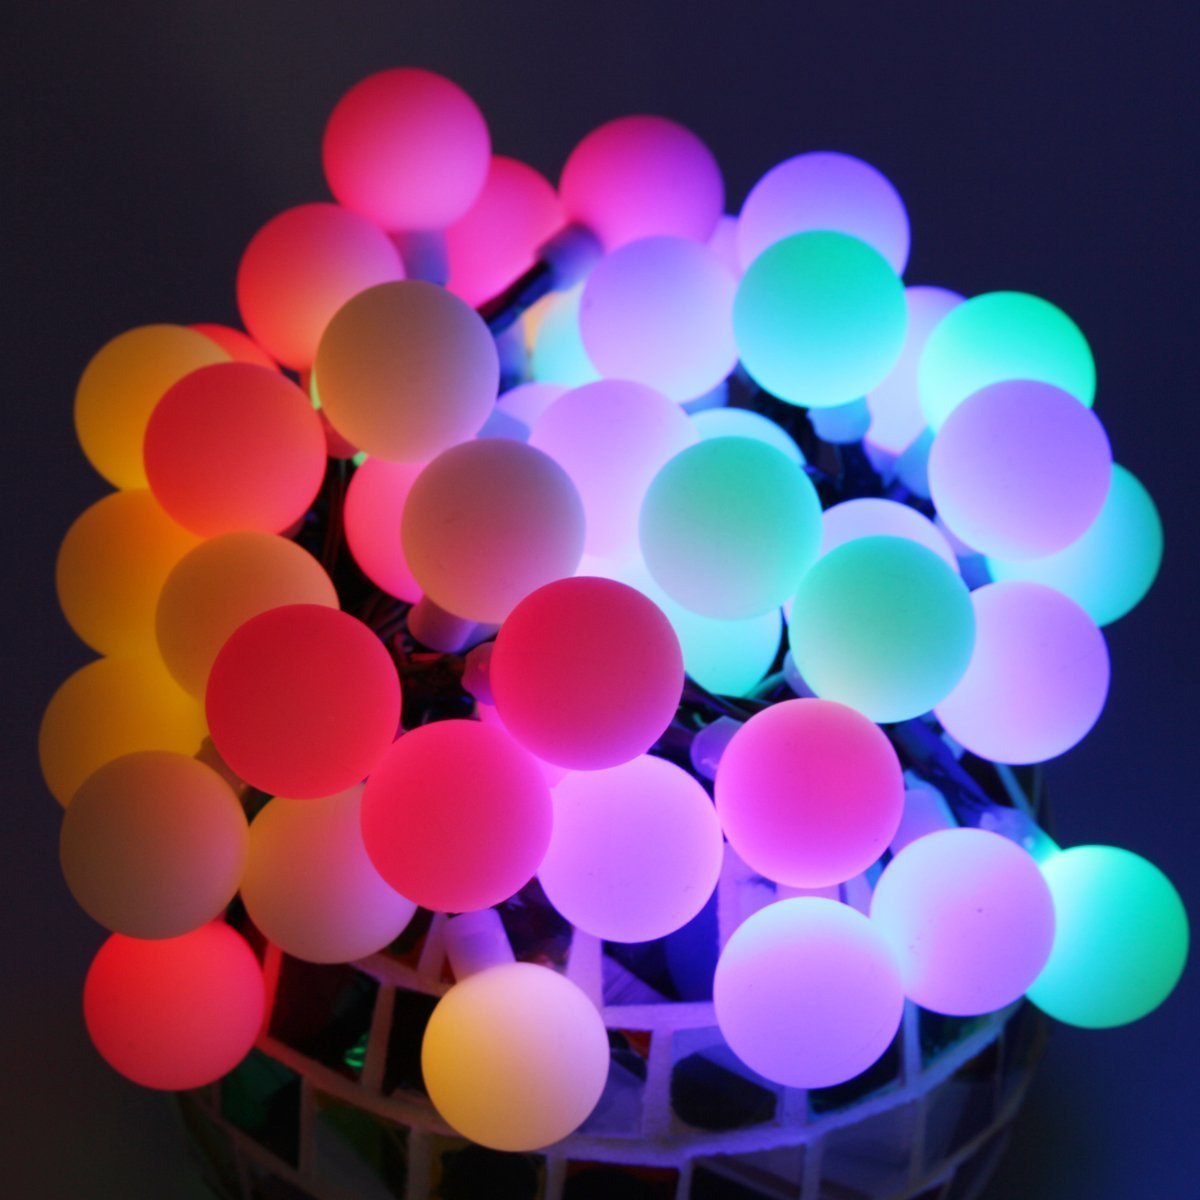 8選択色赤、青、黄、緑、紫、桃、白、彩　LEDロープライト イルミネーション 50m チューブライト 1250球 直径10mm 高輝度 AC100V クリスマス 照明 デコレーション